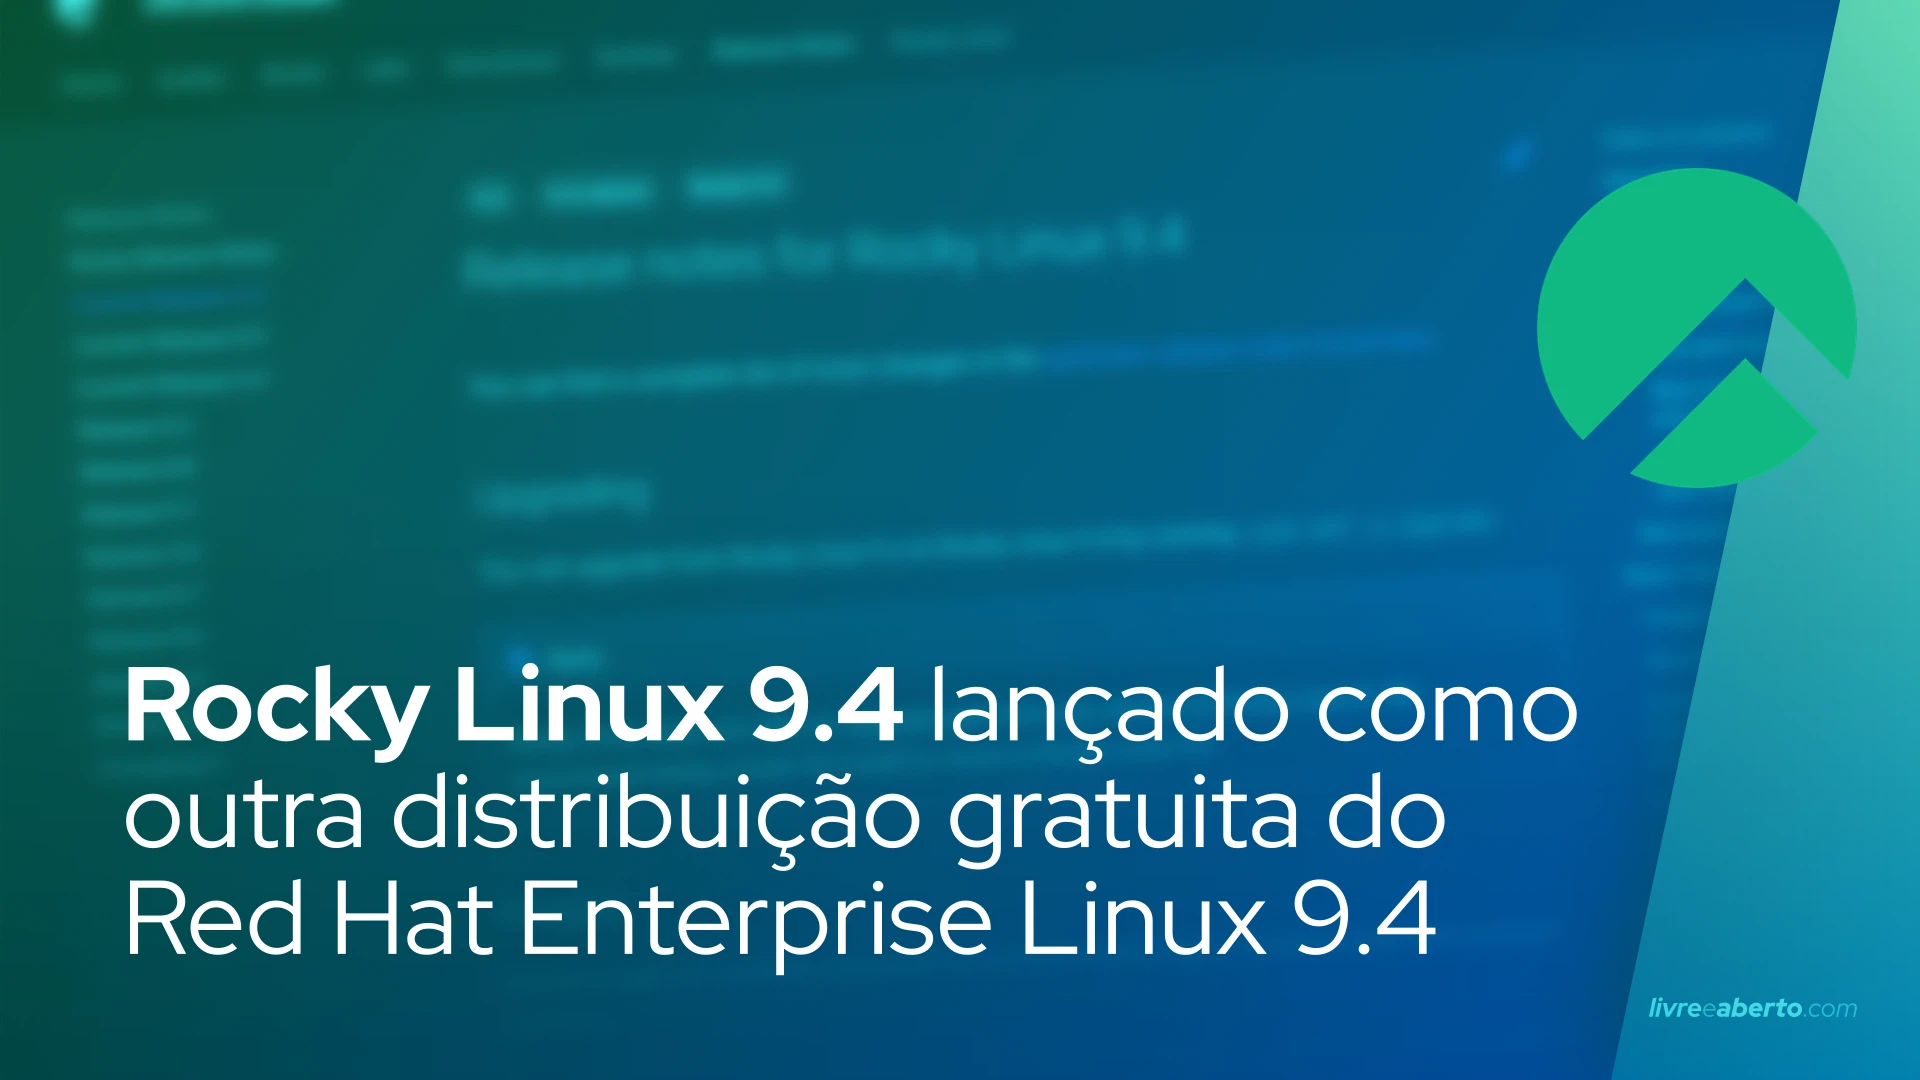 Rocky Linux 9.4 lançado como outra distribuição gratuita do Red Hat Enterprise Linux 9.4